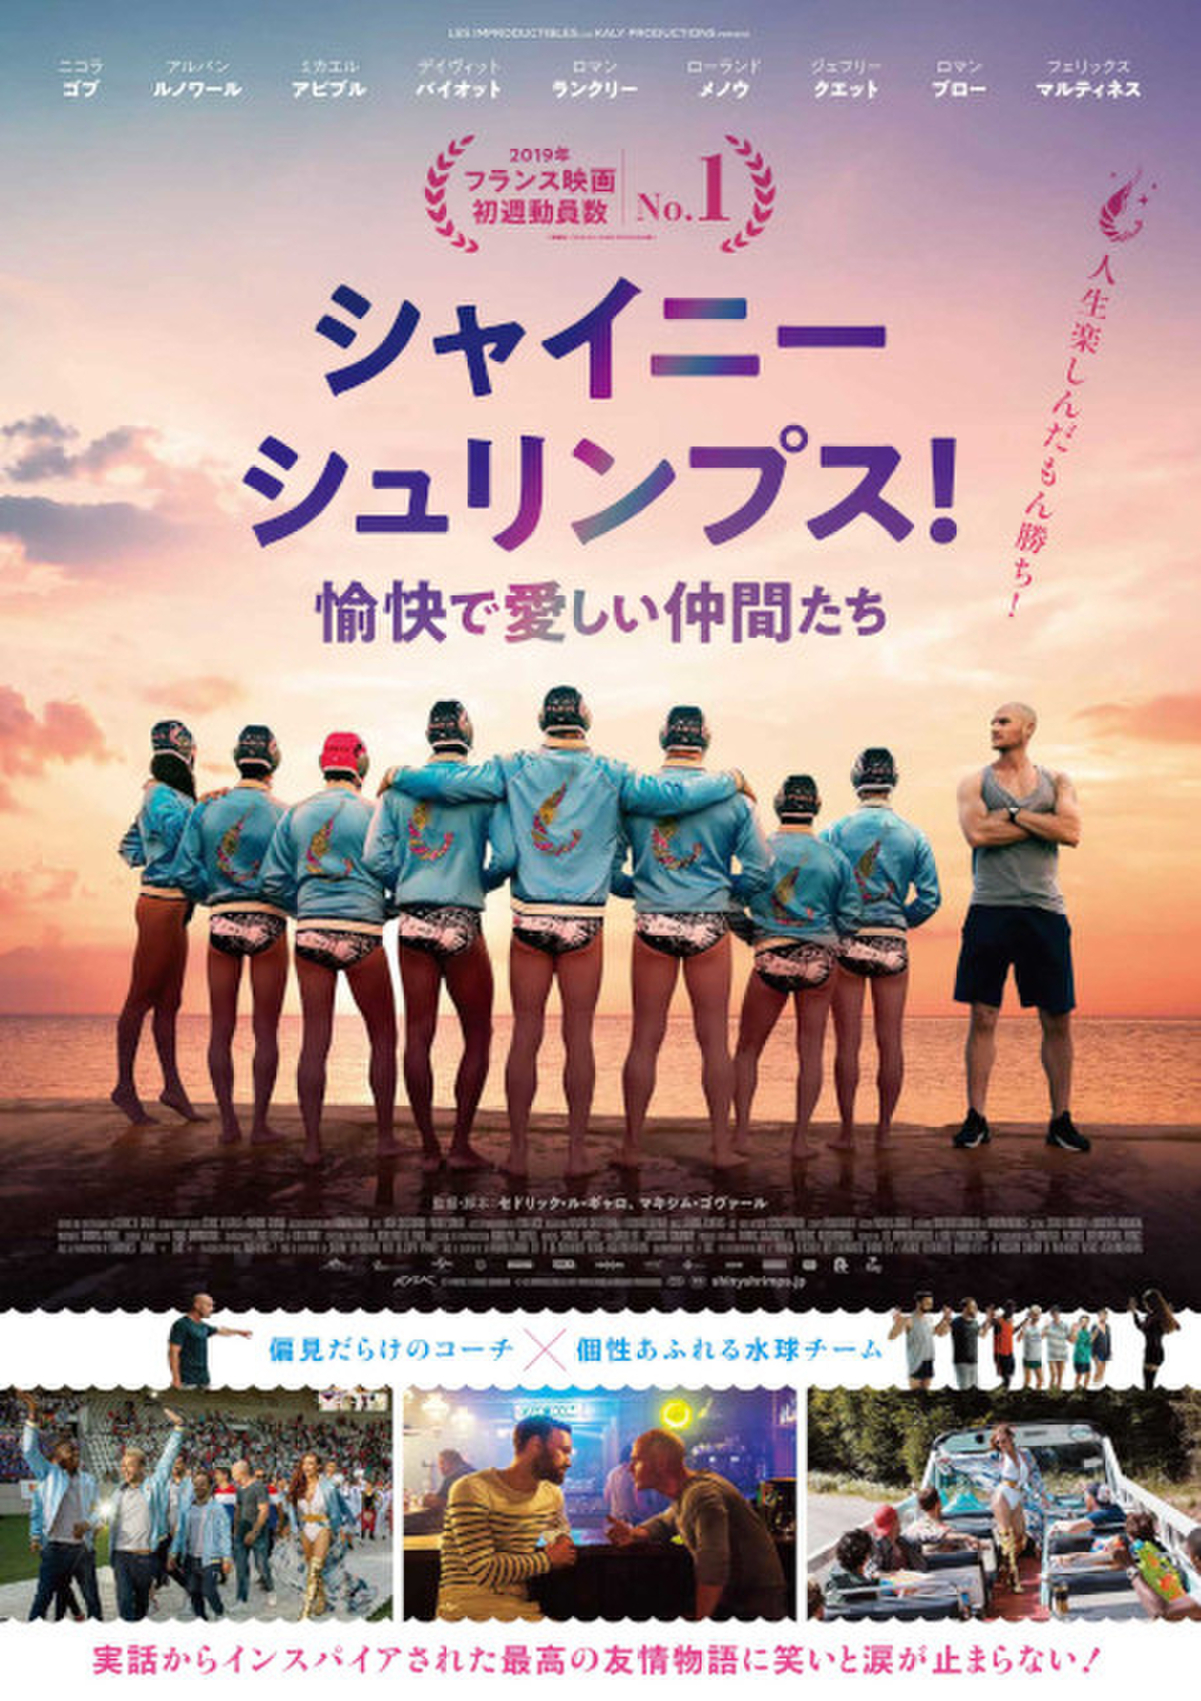 ゲイの水球チーム ハッピーオーラ全開 シャイニー シュリンプス 7月9日公開 予告完成 映画ニュース 映画 Com